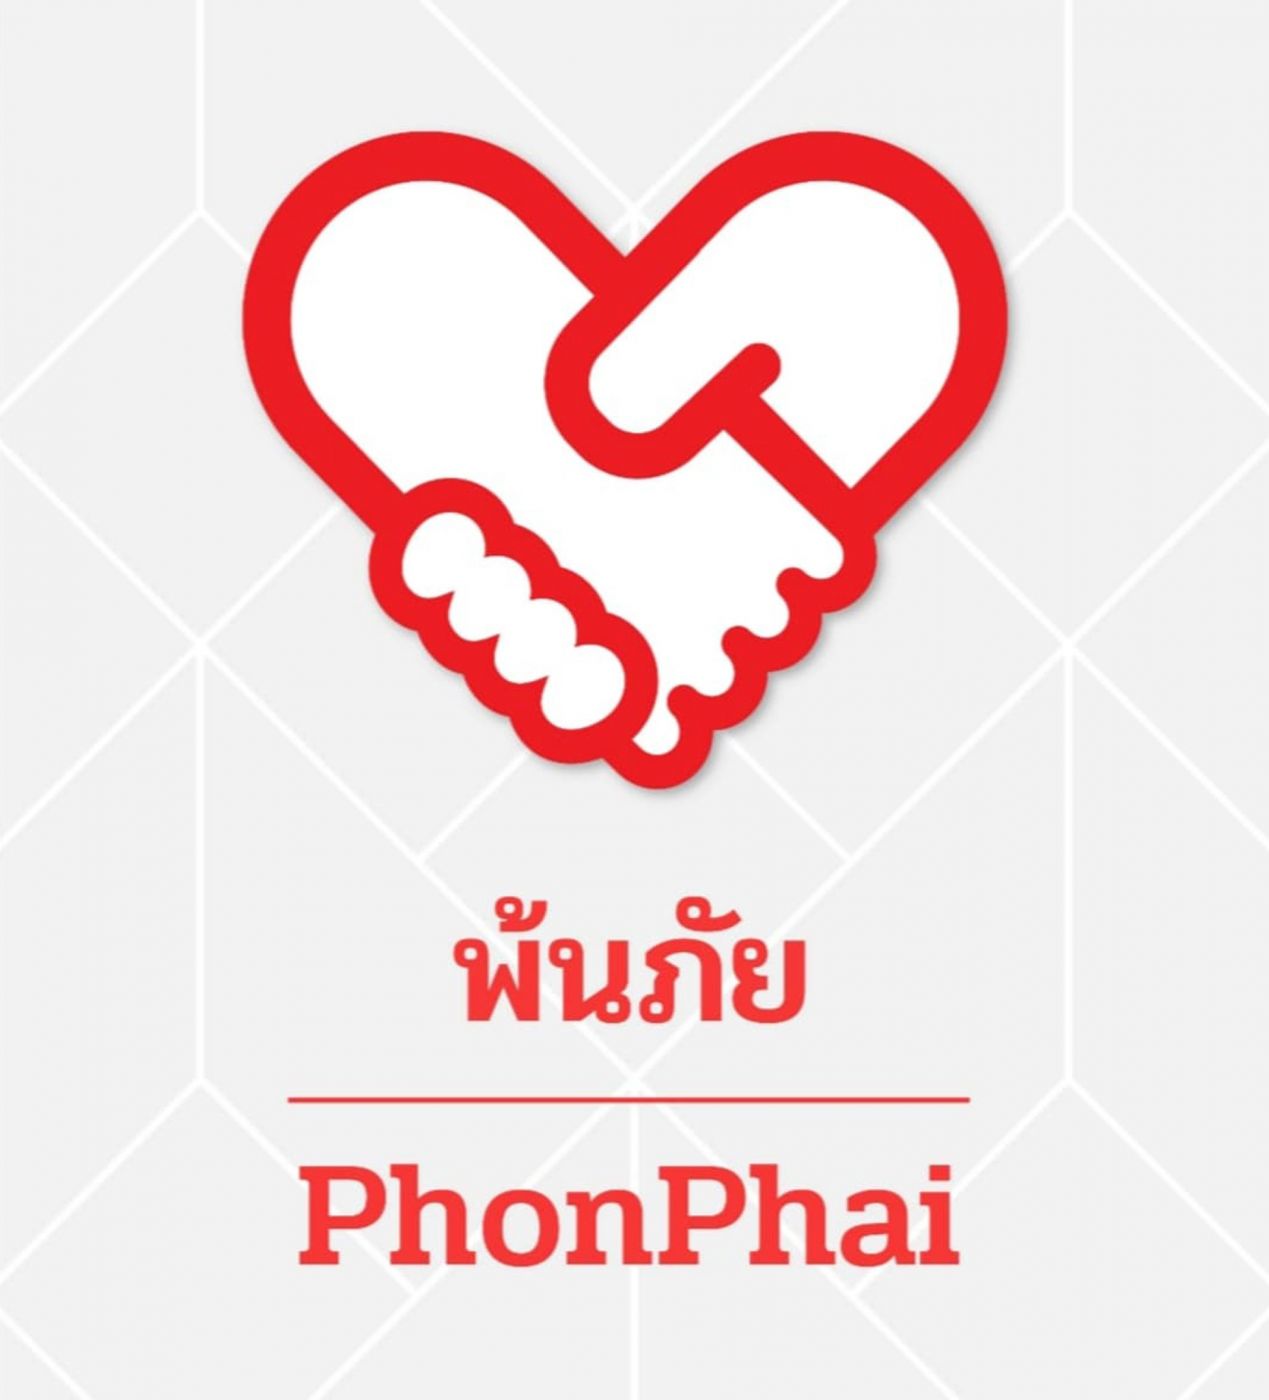 สภากาชาดไทย พร้อมเปิดสิทธิ์ให้ อสส. เข้าระบบแอปพลิเคชัน “พ้นภัย” เพื่อขอสนับสนุนชุดธารน้ำใจฯ